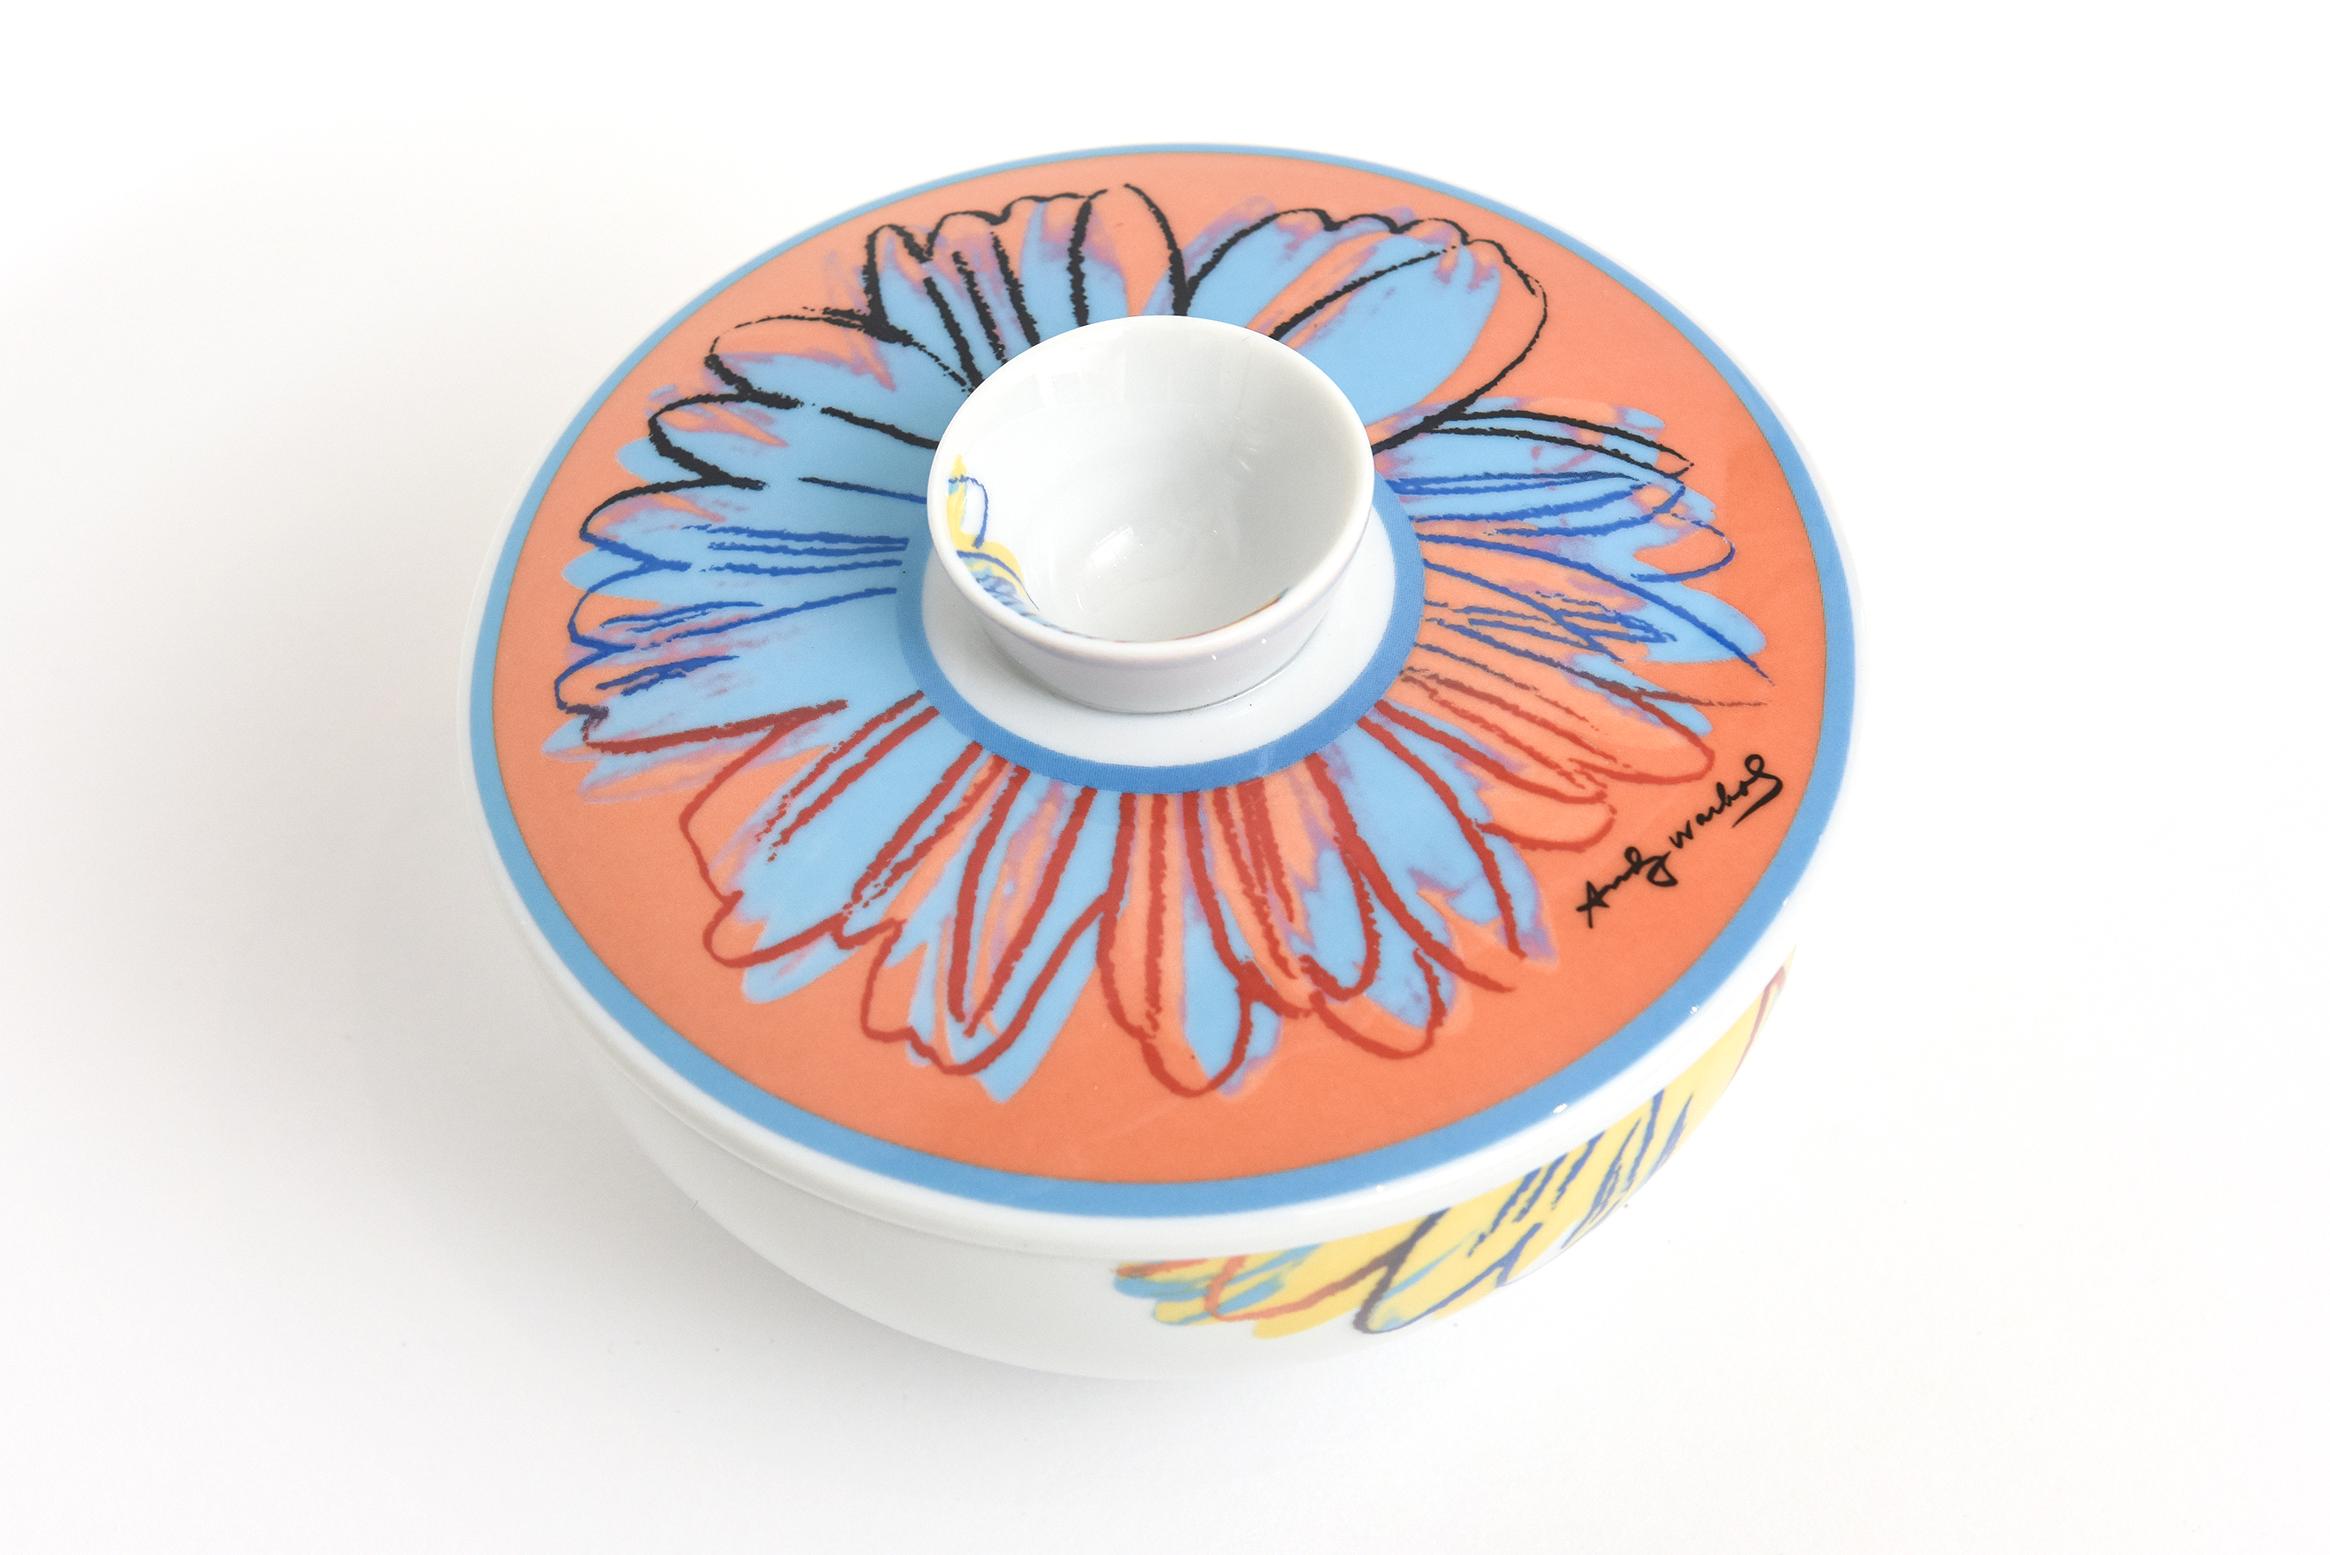 Ce toujours merveilleux sucrier ou bol à fleurs colorées à couvercle en porcelaine Rosenthal Studio Line est d'un design d'après Andy Warhol. Signé Andy Warhol. Les couleurs sont joyeuses dans des tons orange, bleu, jaune et rouge se détachant sur